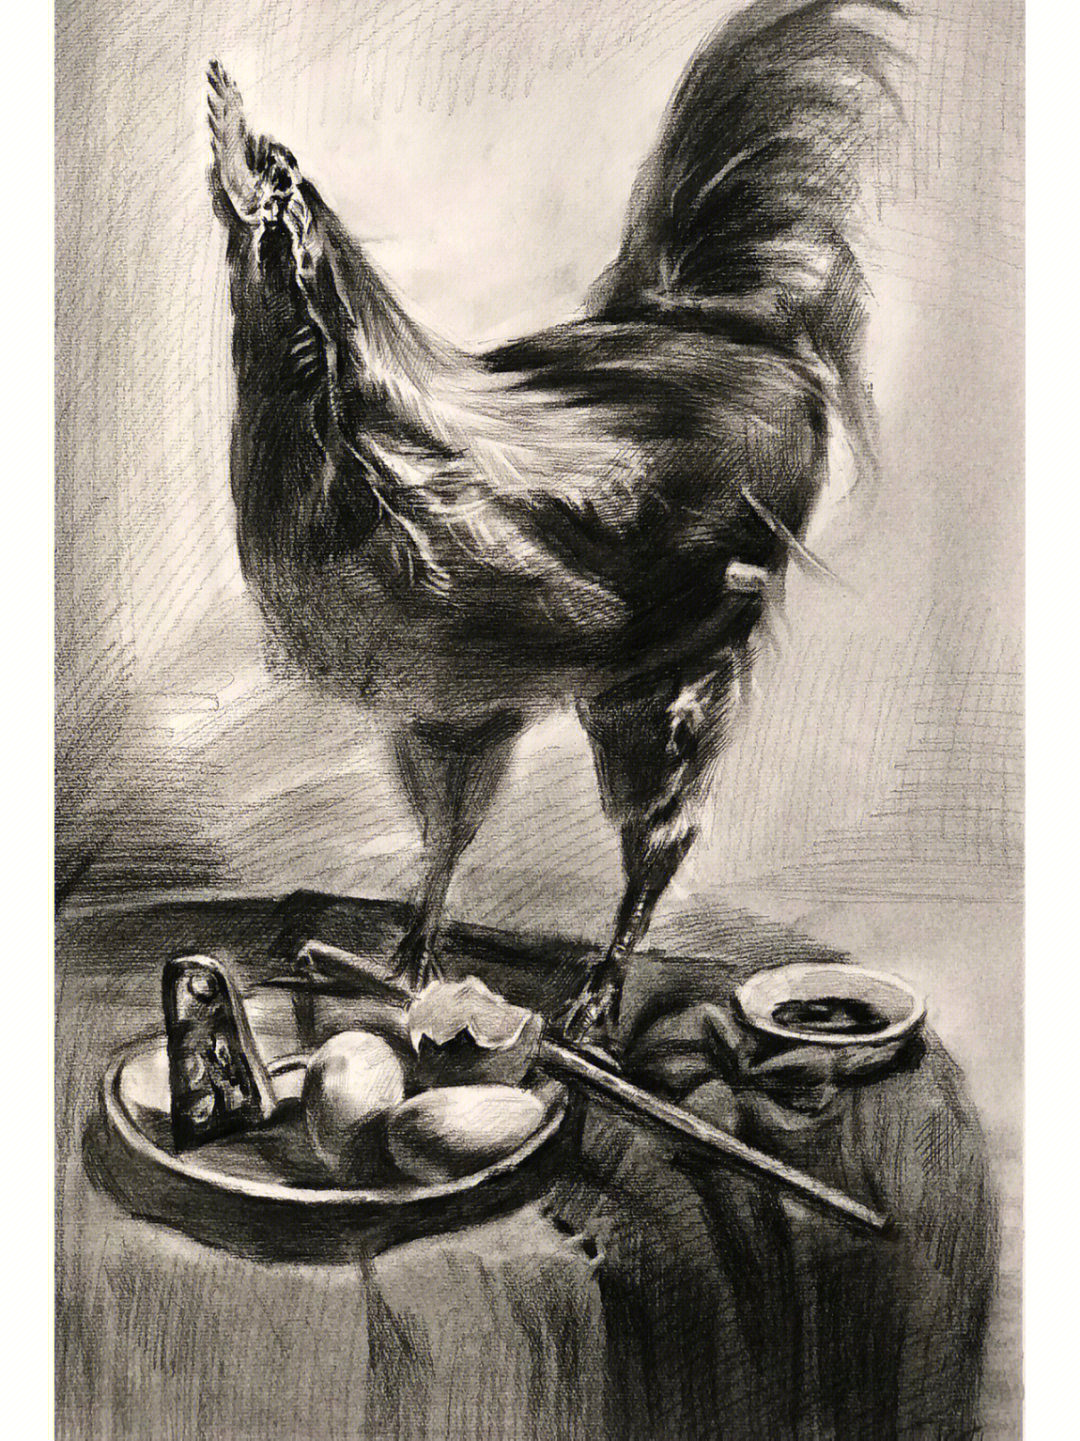 鸡的素描画法图片